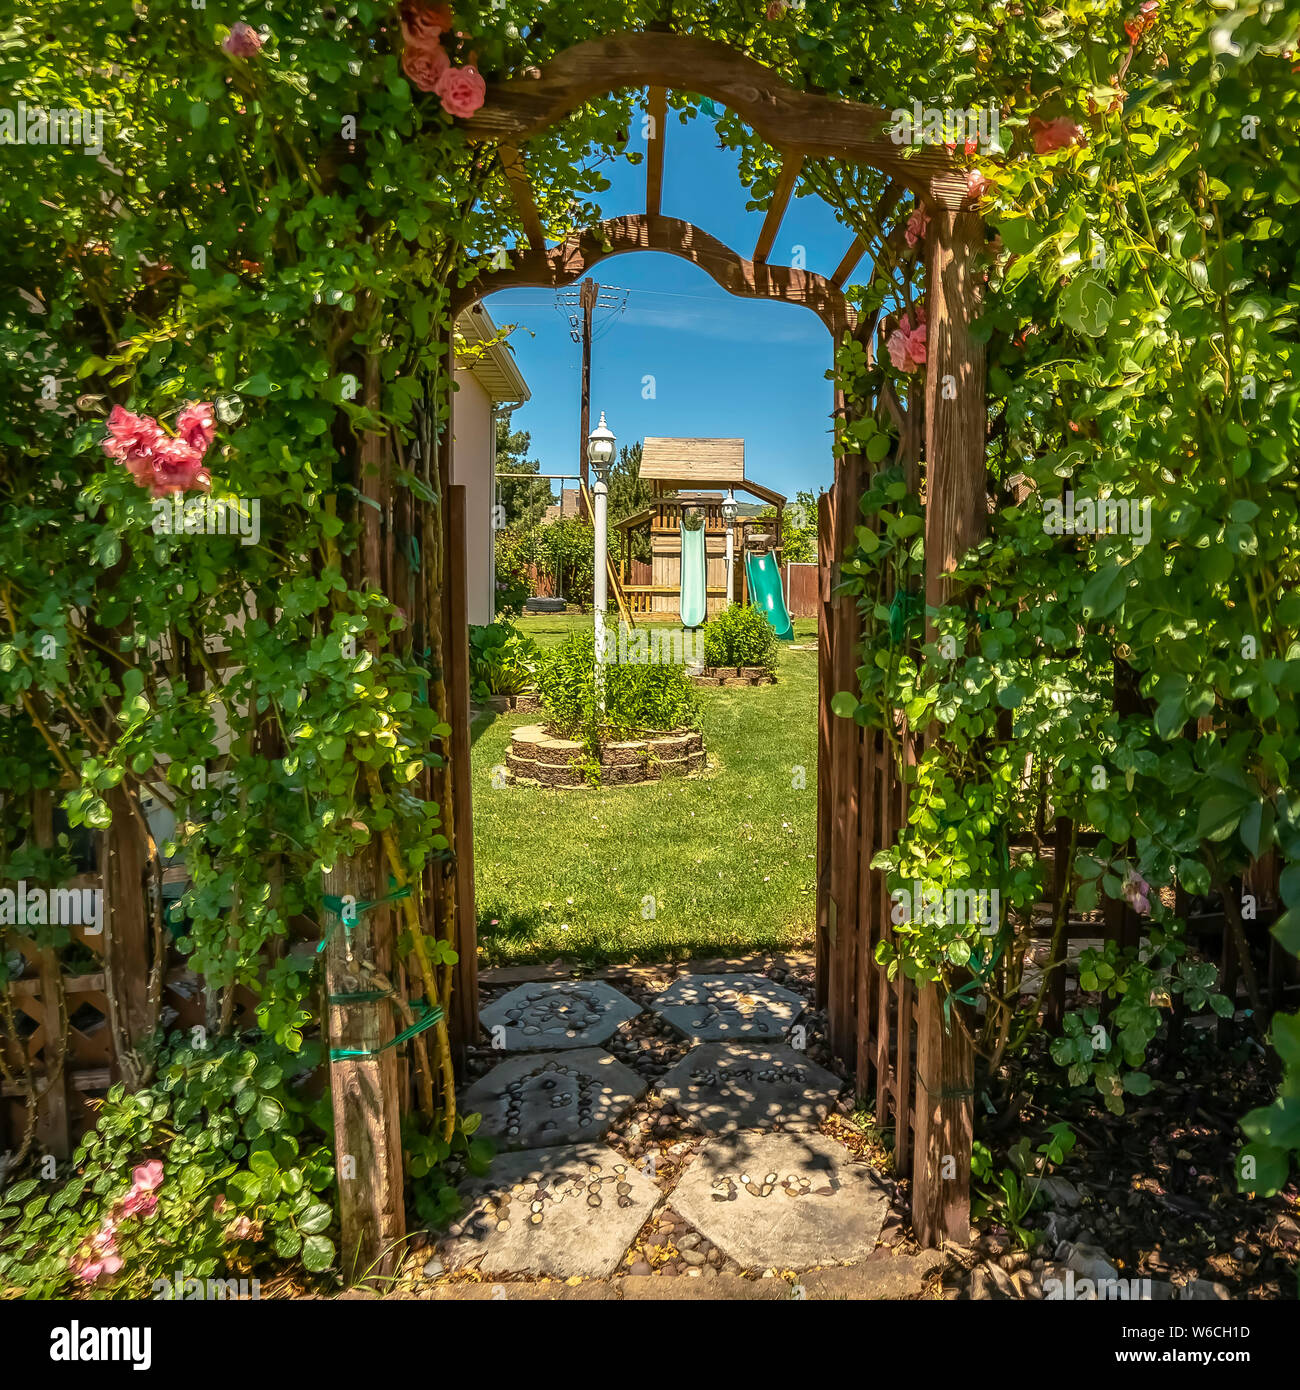 Arco da giardino immagini e fotografie stock ad alta risoluzione